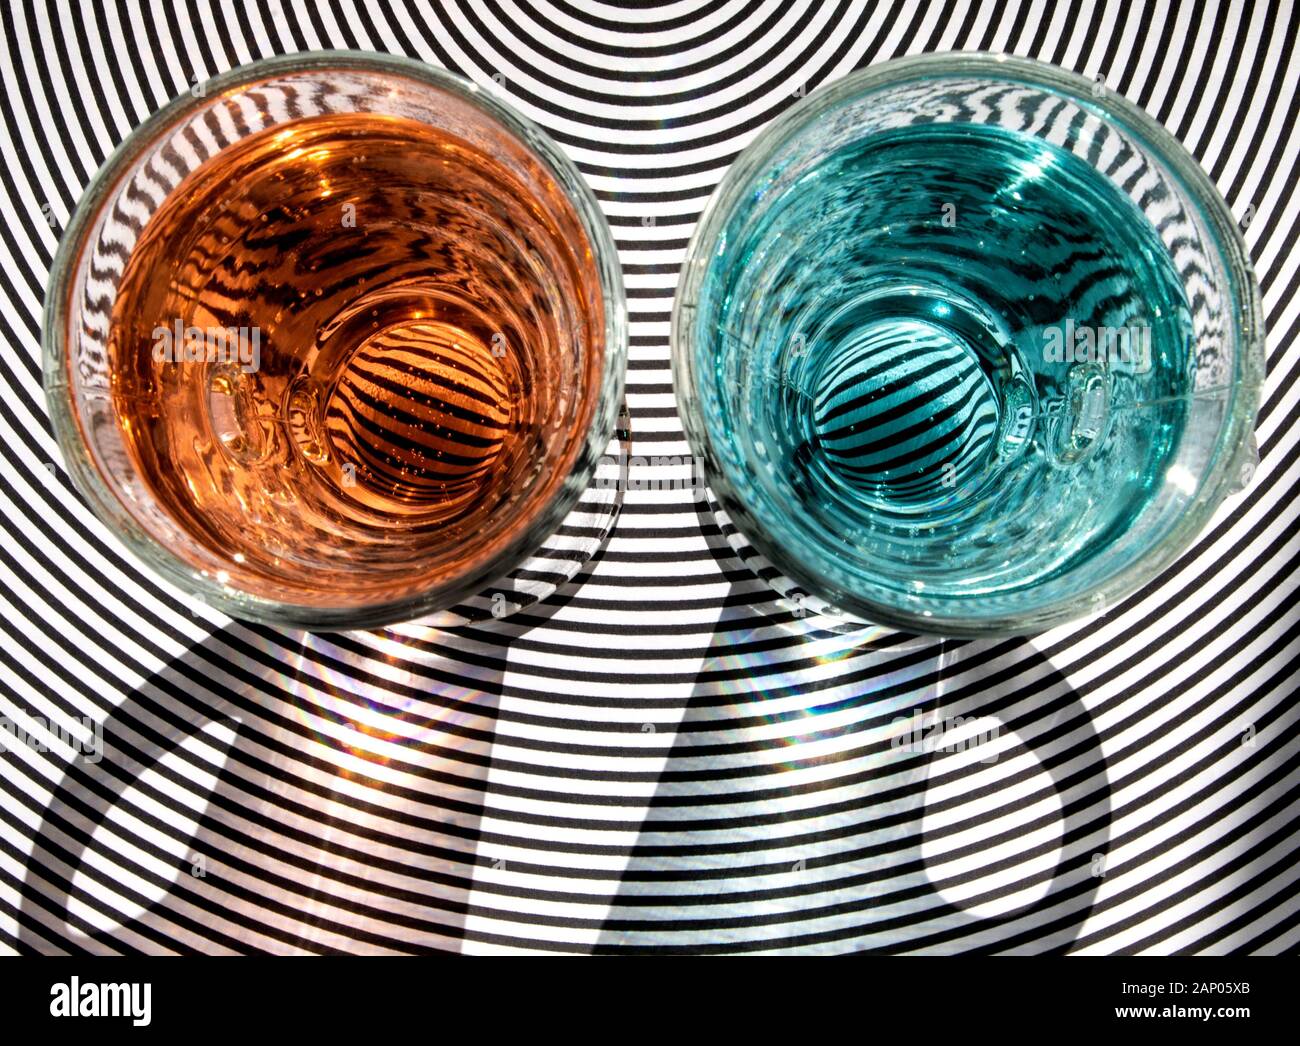 Una imagen para demostrar efectos ópticos en el vidrio y el agua con fines artísticos y educativos. Foto de stock